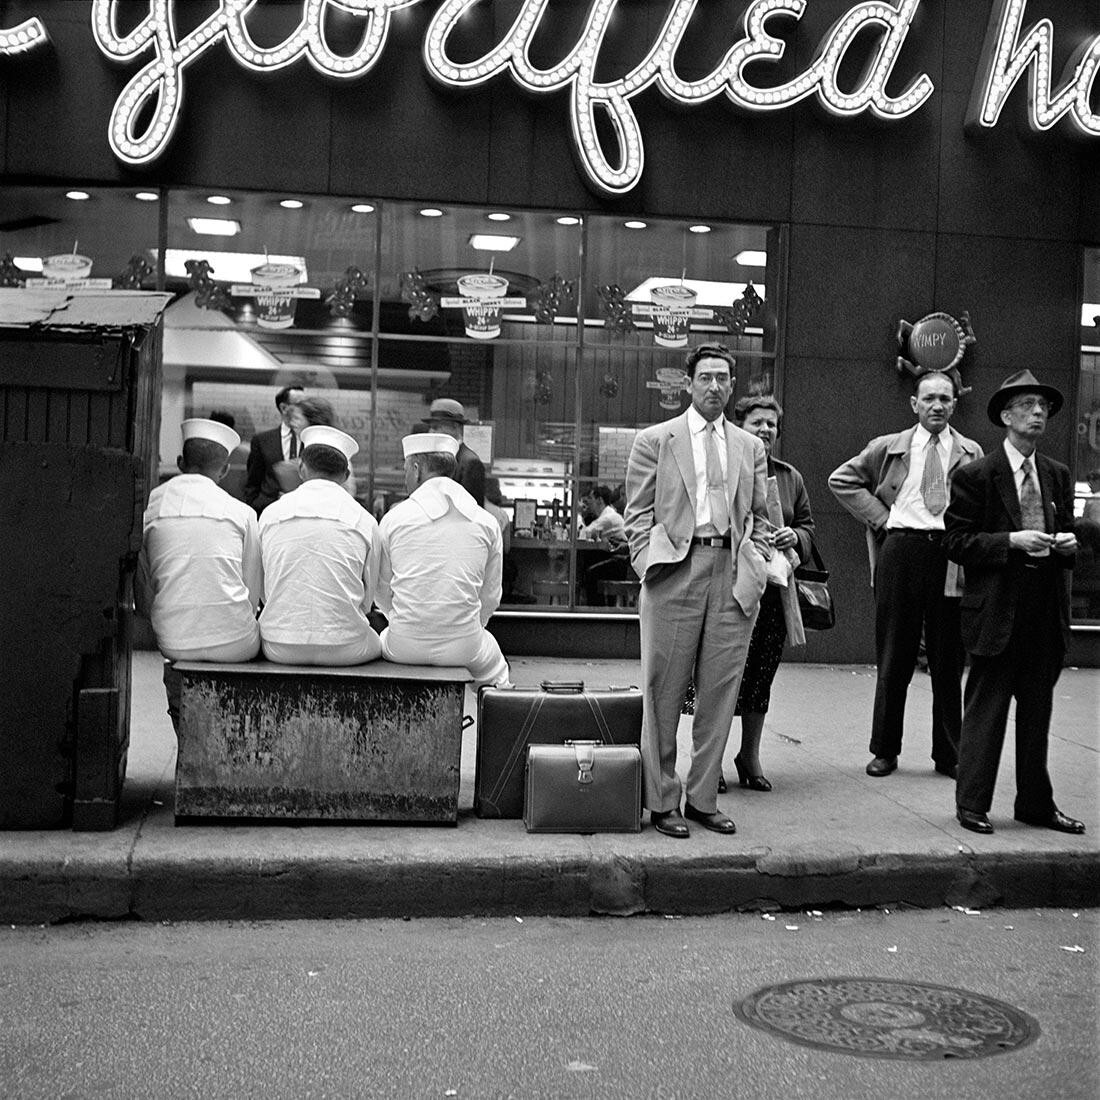 7 июня 1956 г., Нью-Йорк, штат Нью-Йорк. Фотограф Вивиан Майер